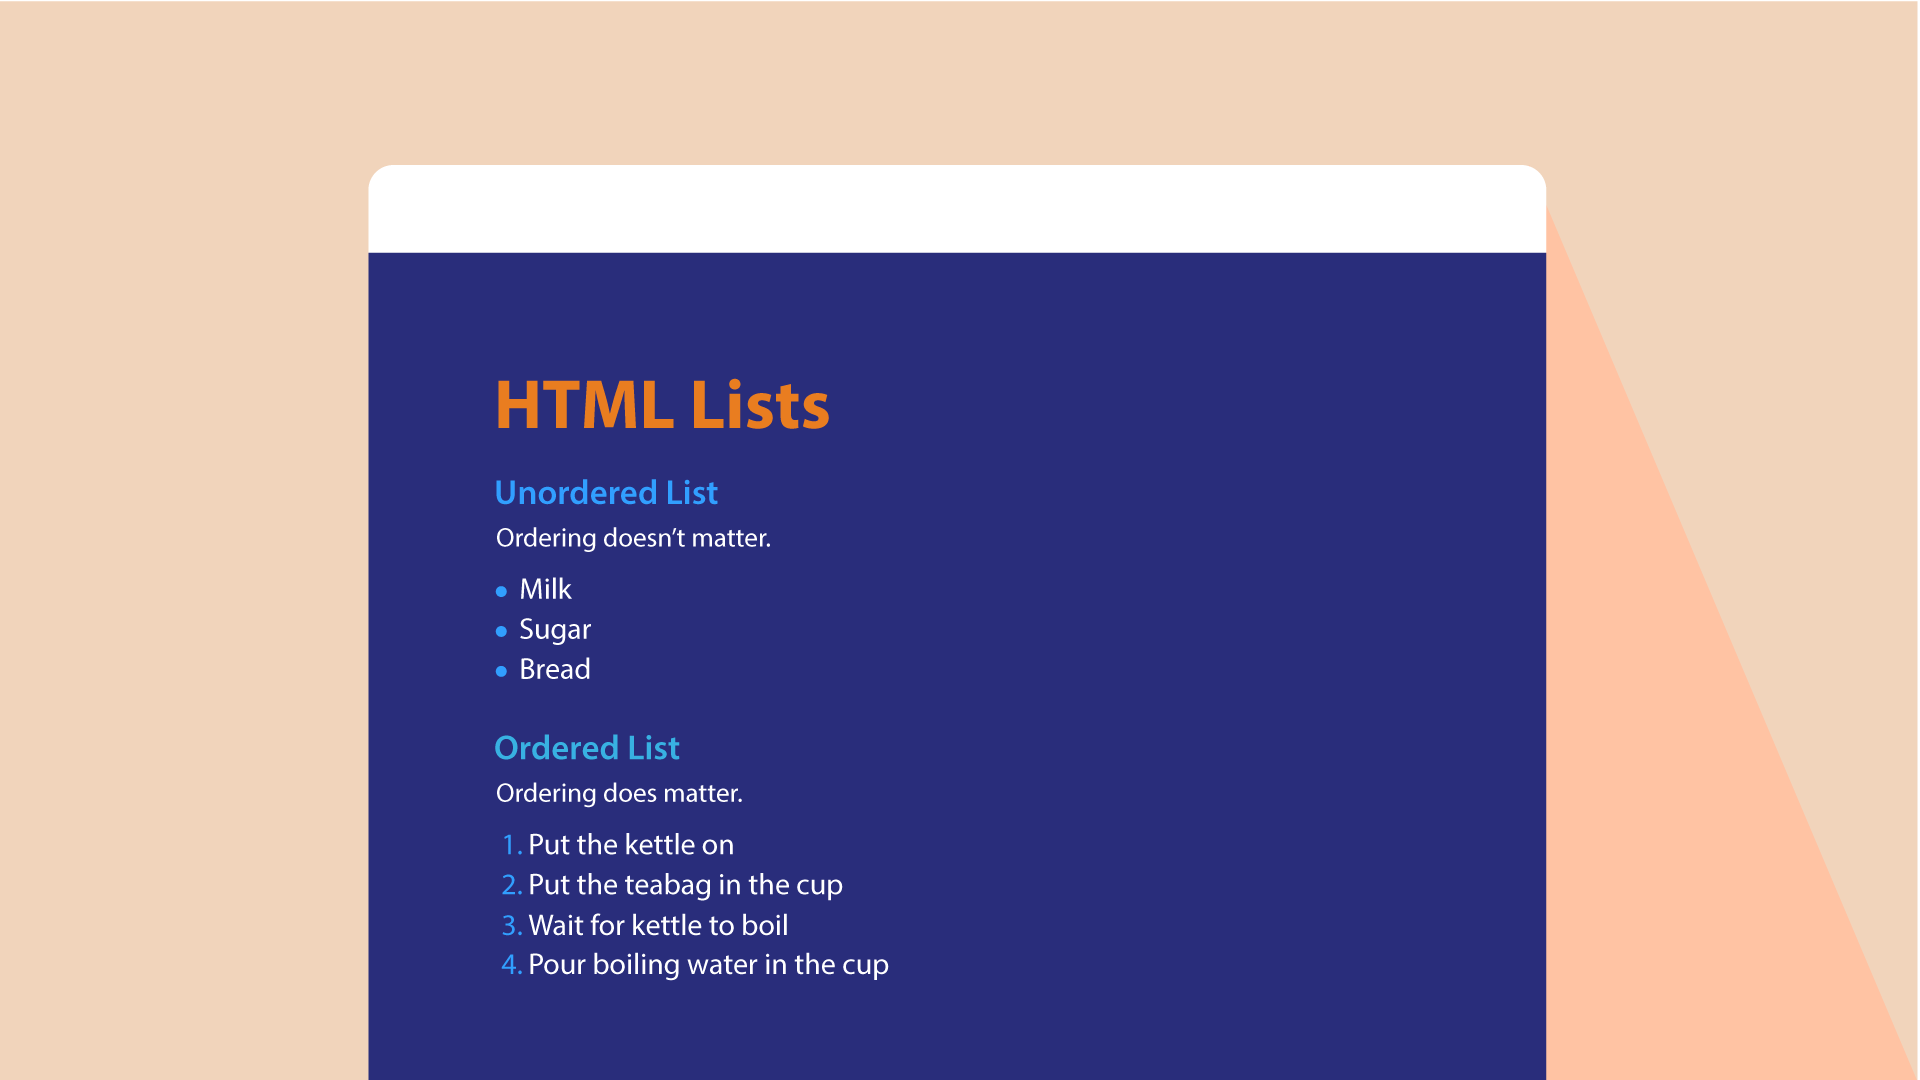 HTML lists